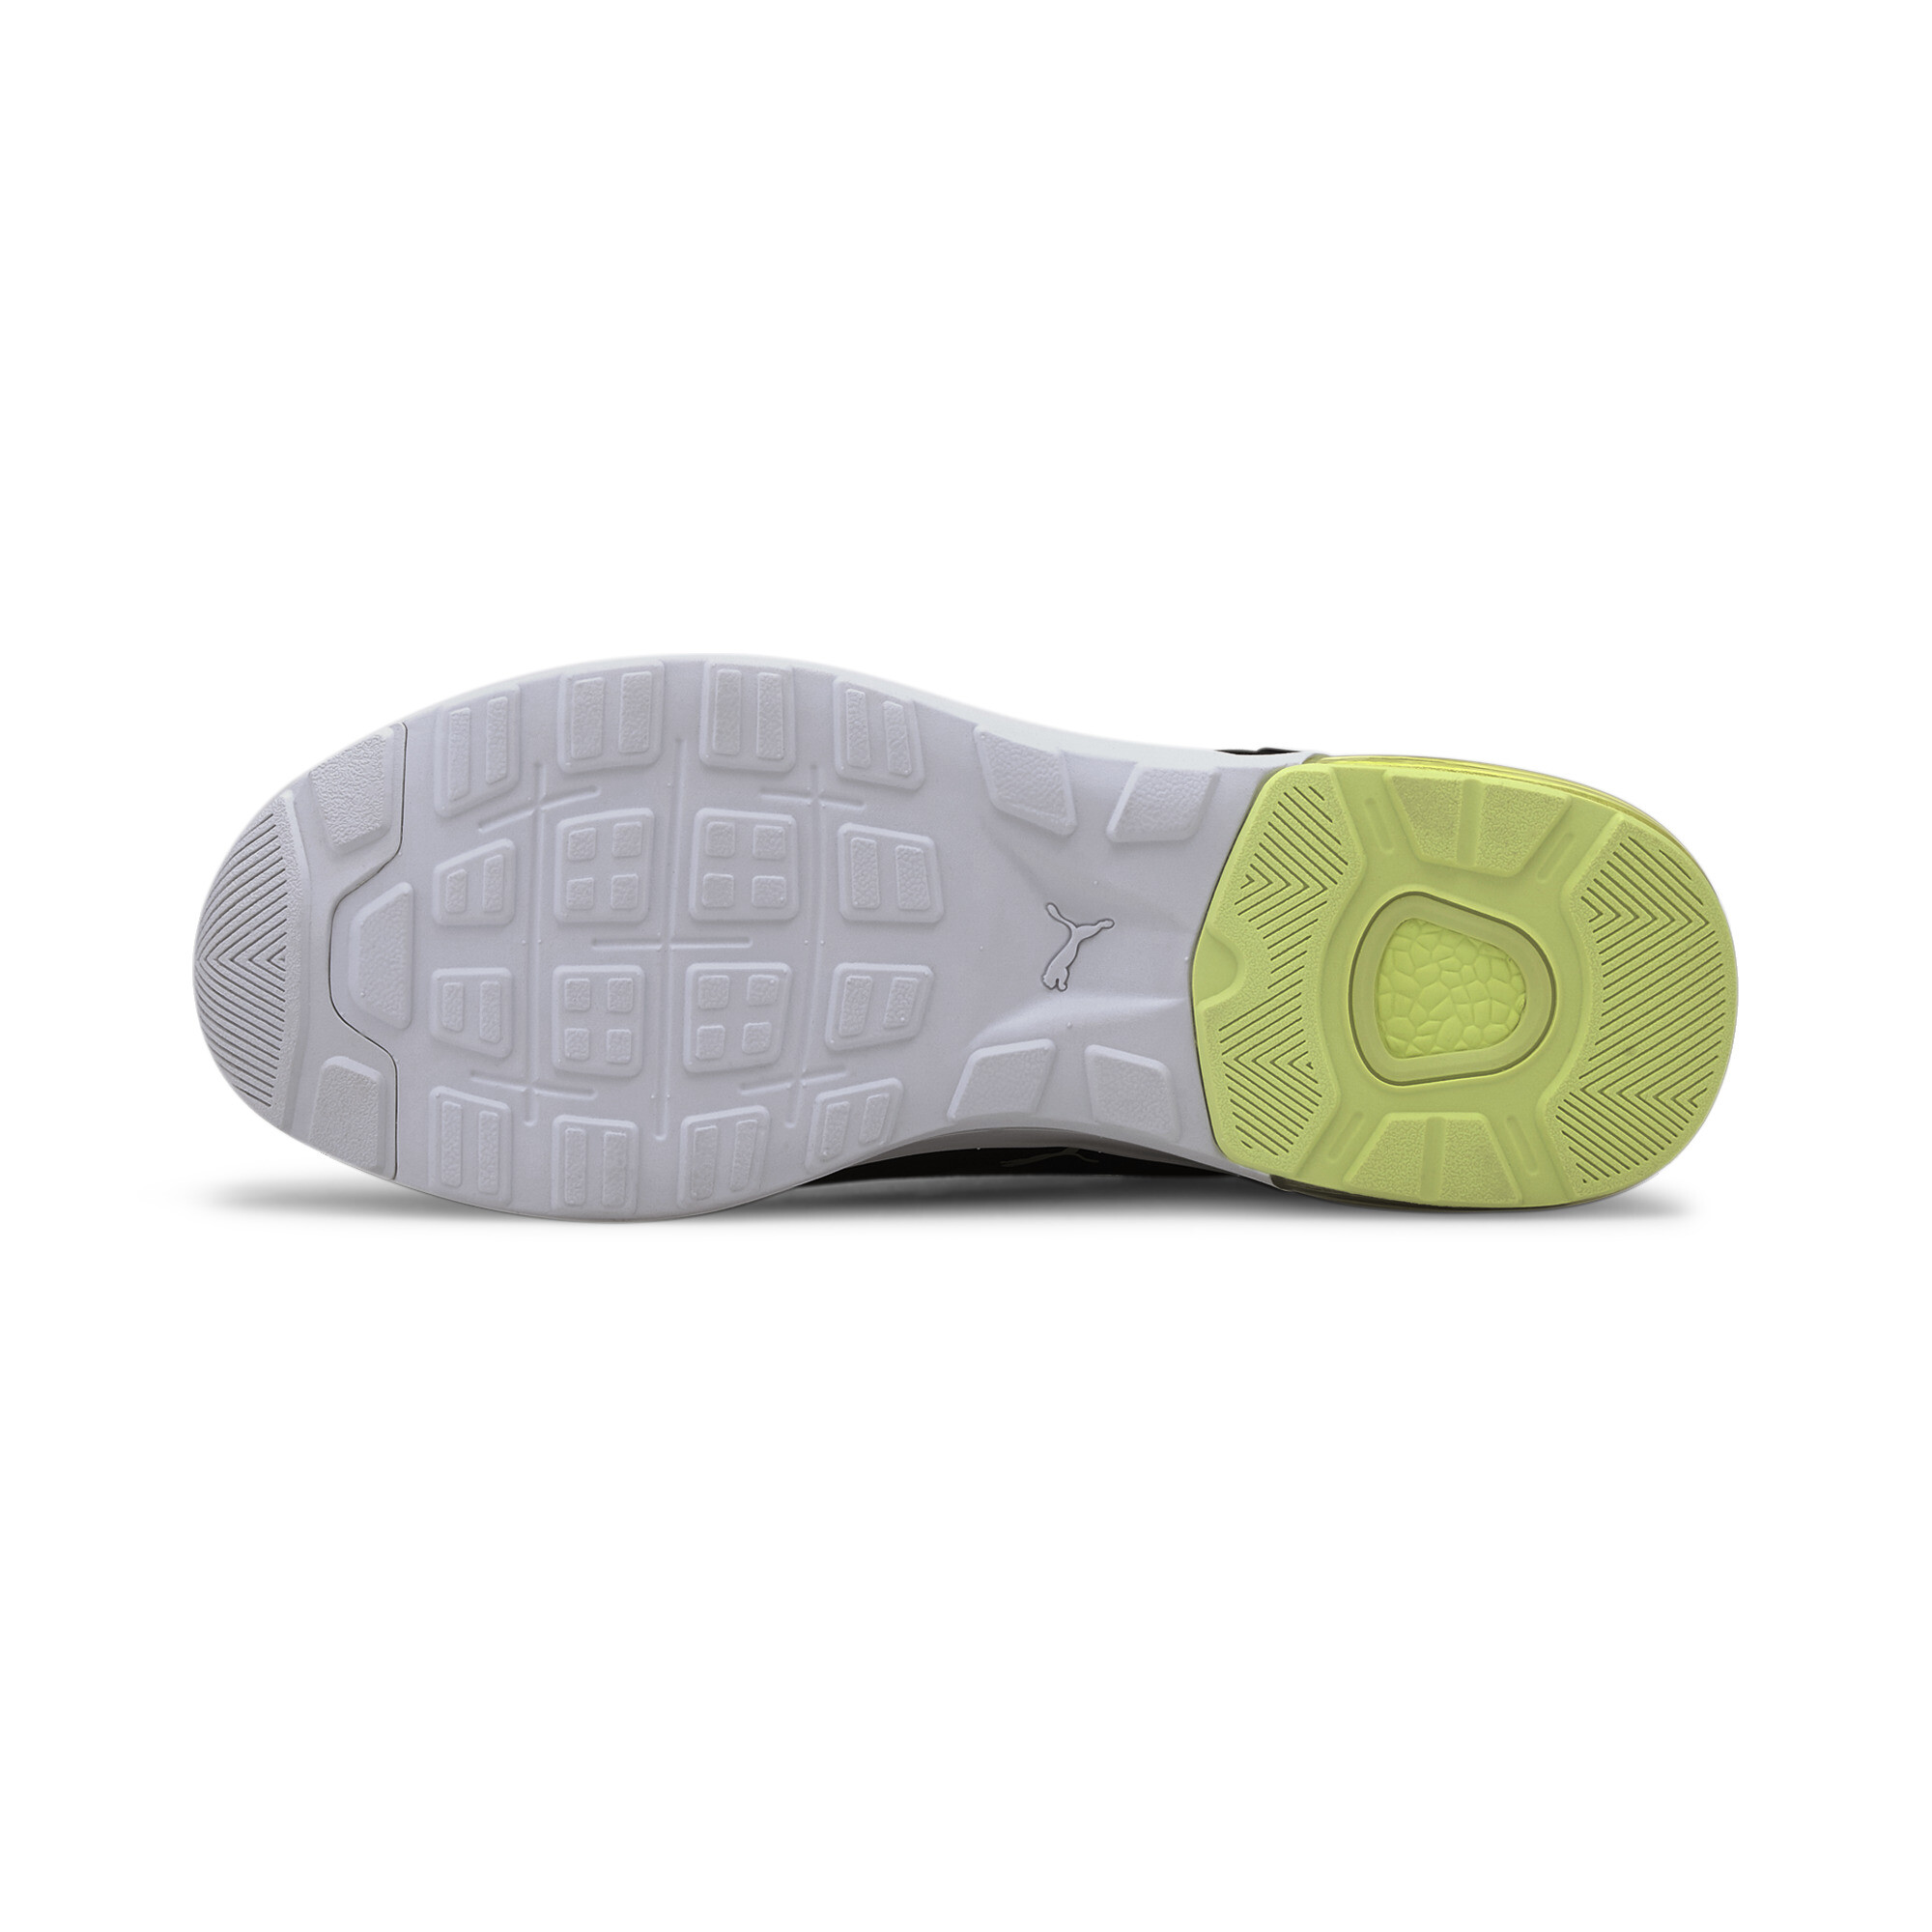 Indexbild 17 - PUMA Electron Street Era Sneaker Unisex Schuhe Basics Neu